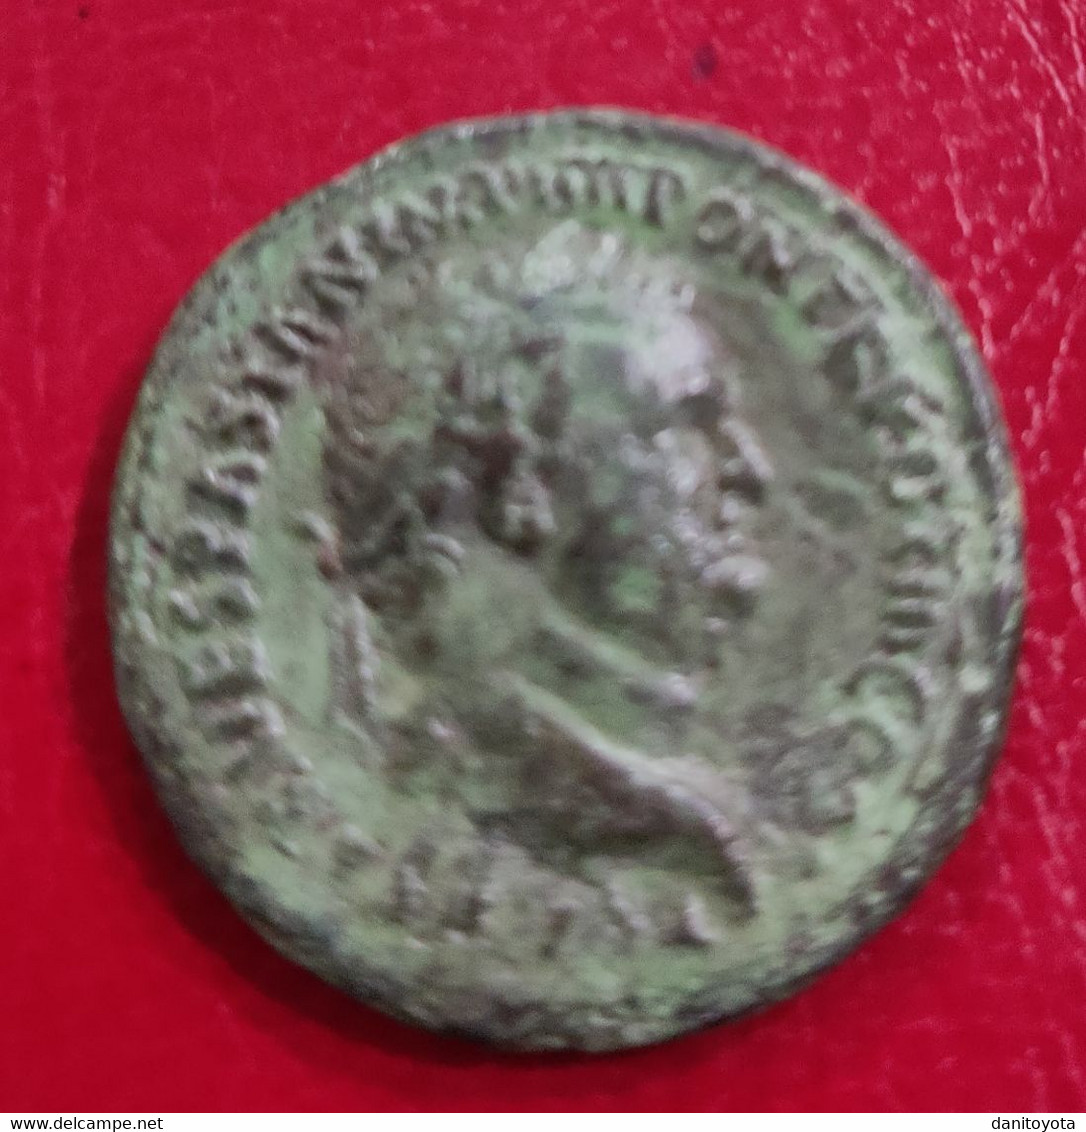 IMPERIO ROMANO. AÑO 72 D.C. DUPONDIO. TITO. PESO 10.7 GR.  REF A/F. - La Dinastia Flavia (69 / 96)